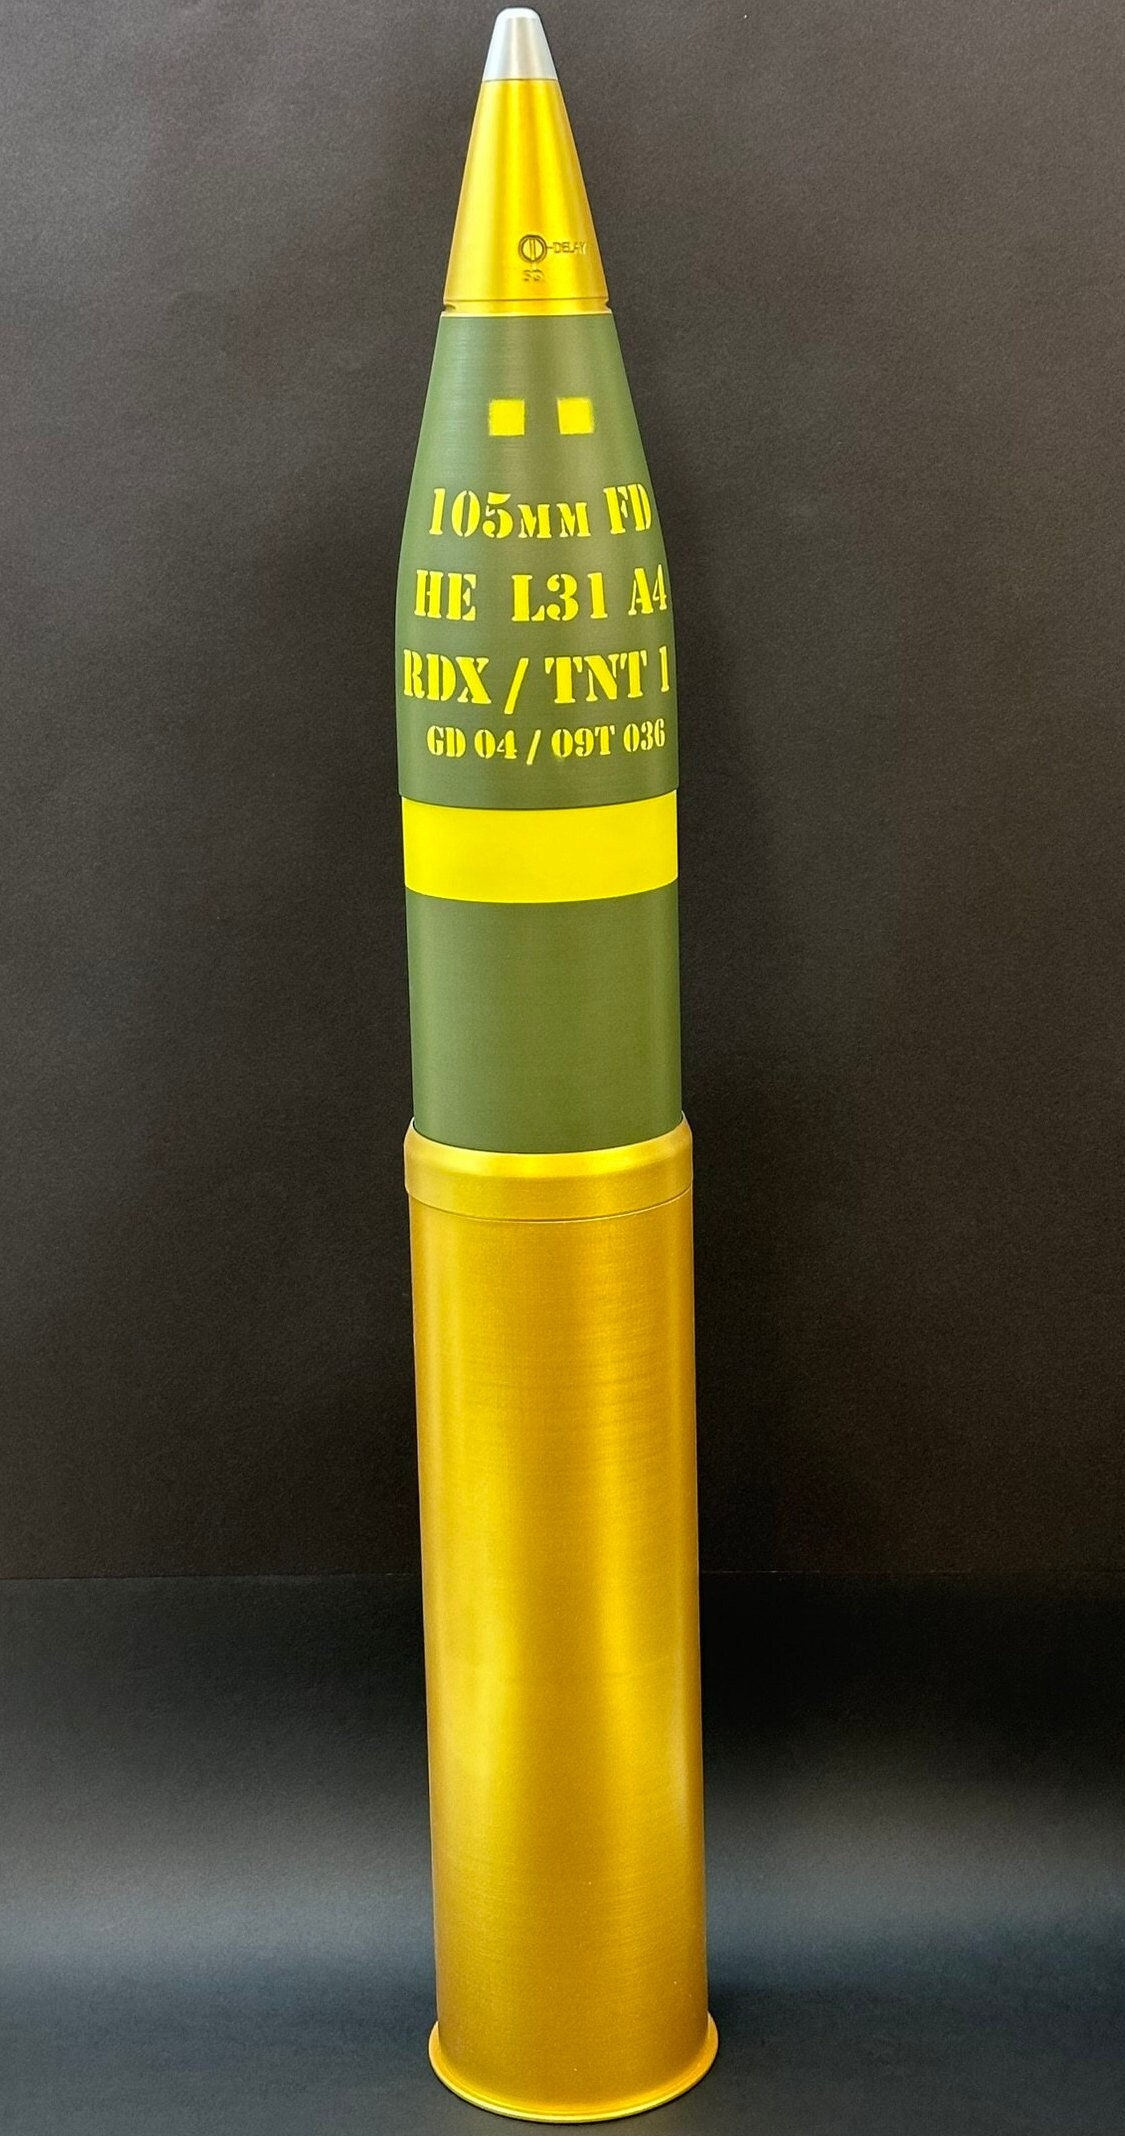 105MM M14 BRASS ARTILLERY SHELL CASING - Kidd Family Auctions